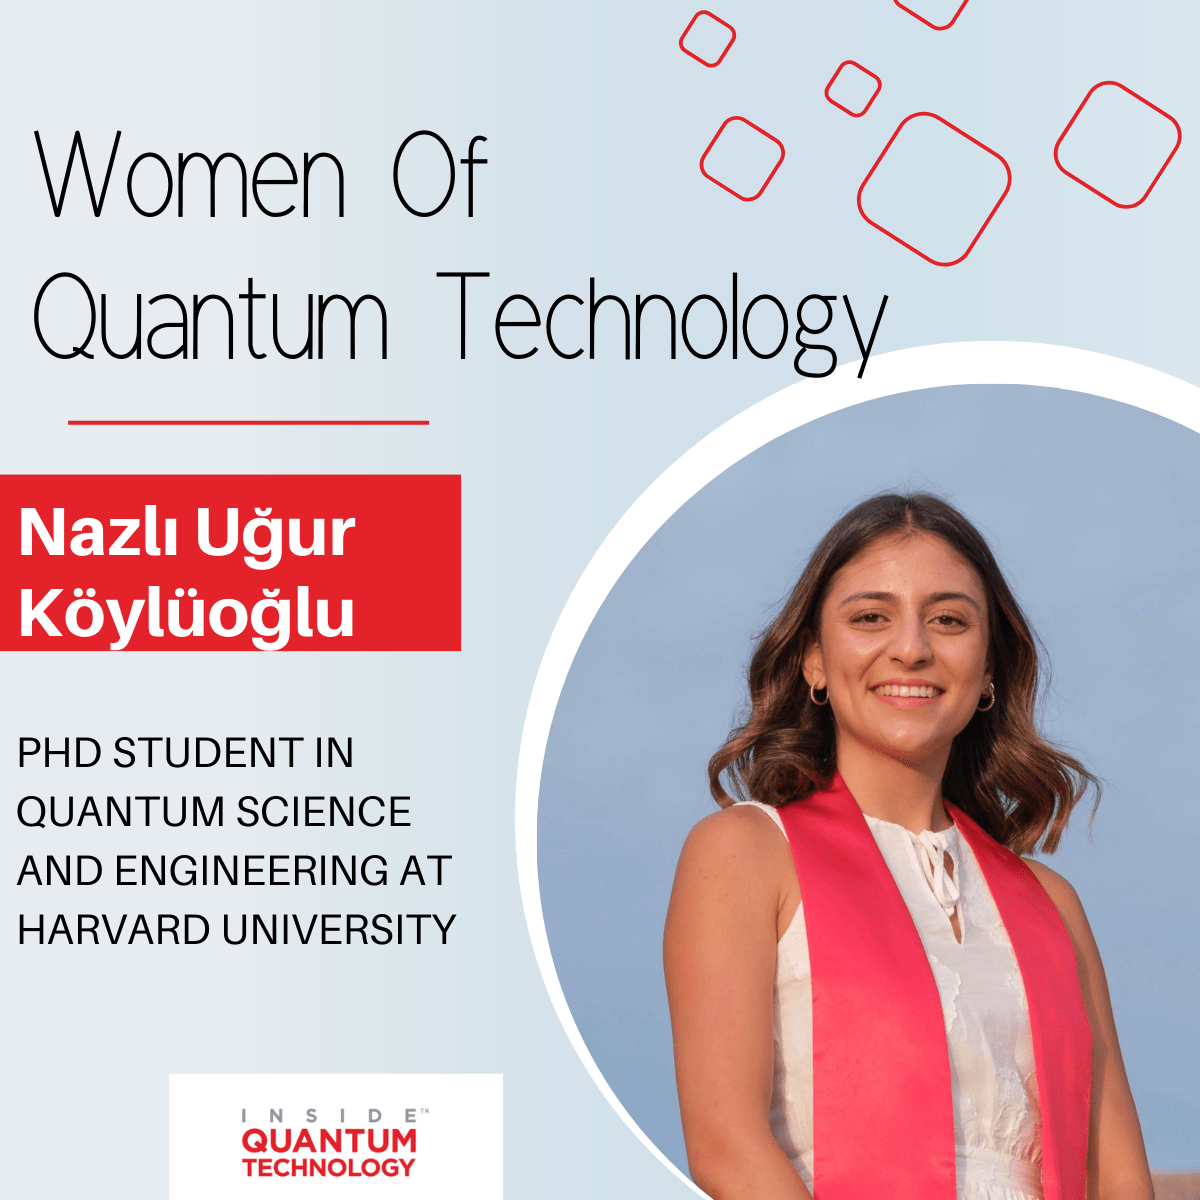 Femmes de la technologie quantique : Nazlı Uğur Köylüoğlu de l'Université Harvard - Inside Quantum Technology